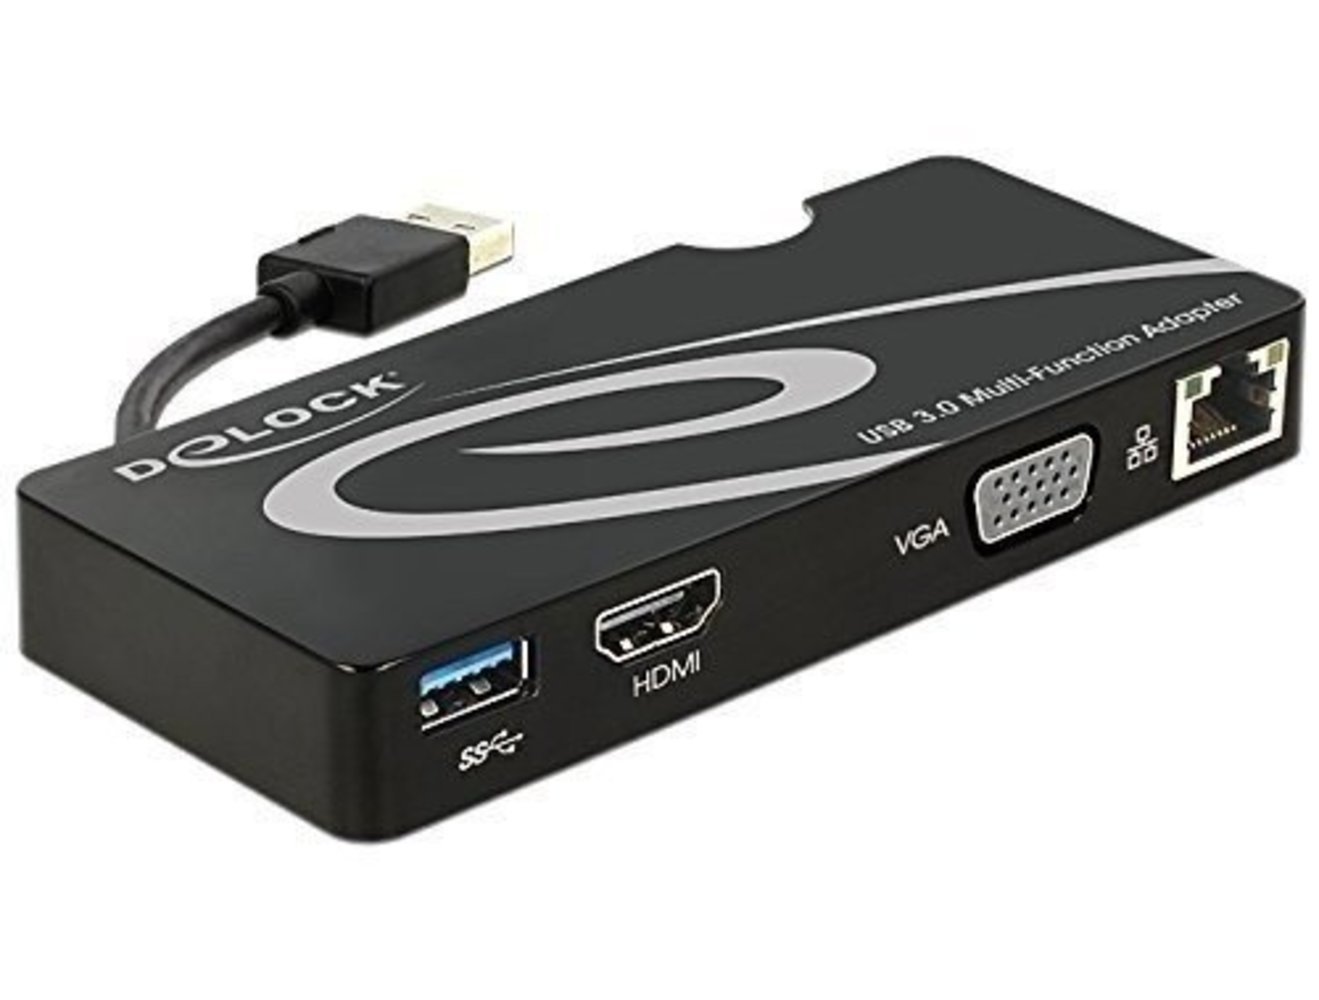 DELOCK Adapter USB 3.0 zu HDMI + VGA + Gigabit LAN + USB 3.0